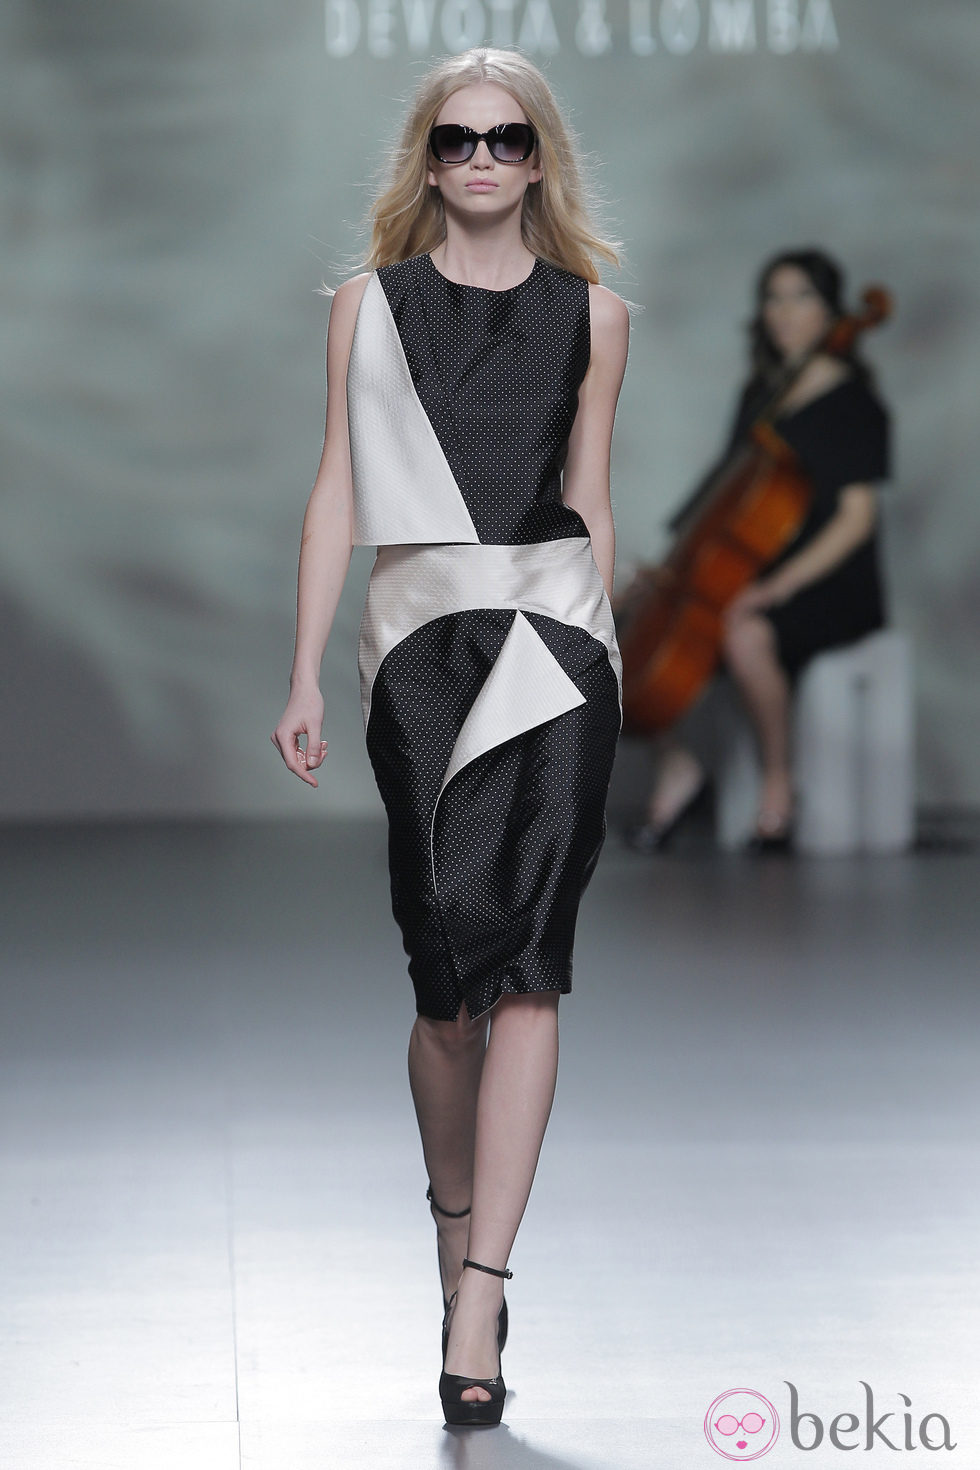 Vestido blanco y negro de la colección otoño/invierno 2013/2014 de Devota & Lomba en Madrid Fashion Week